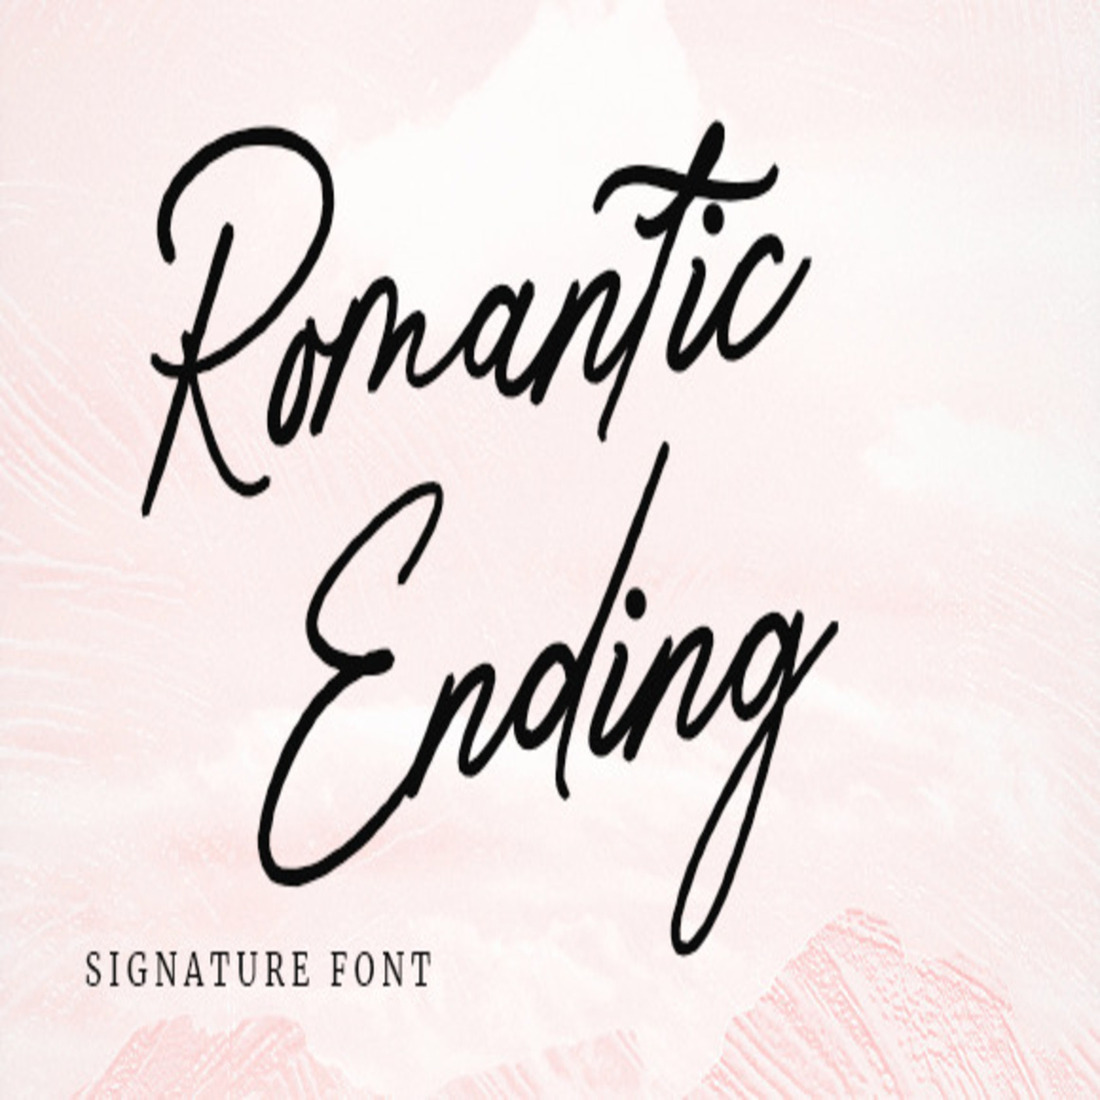 Romantic Signature cover image.